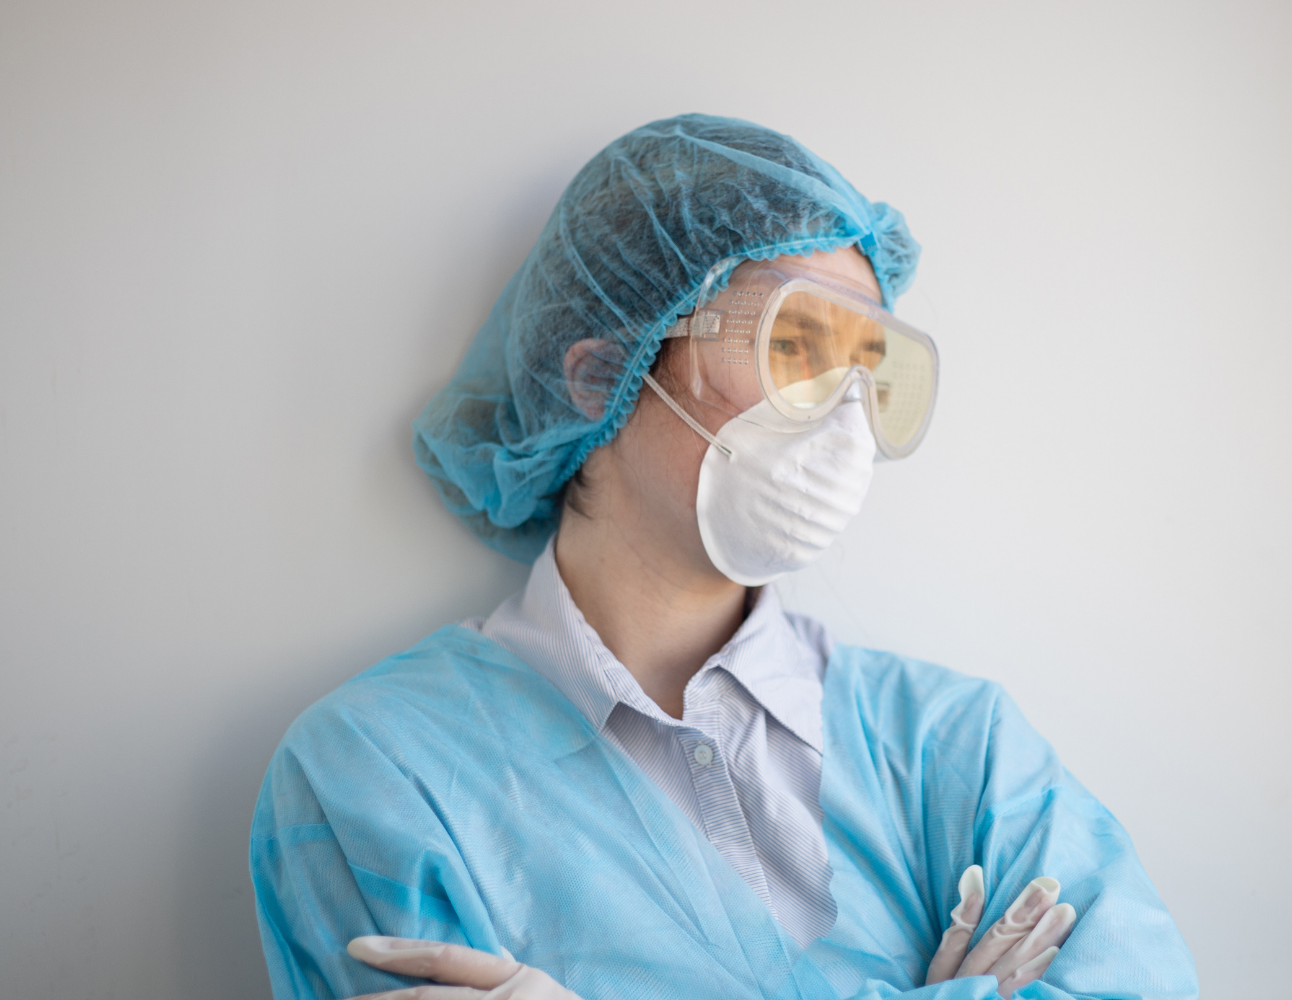 A nurse wearing full PPE